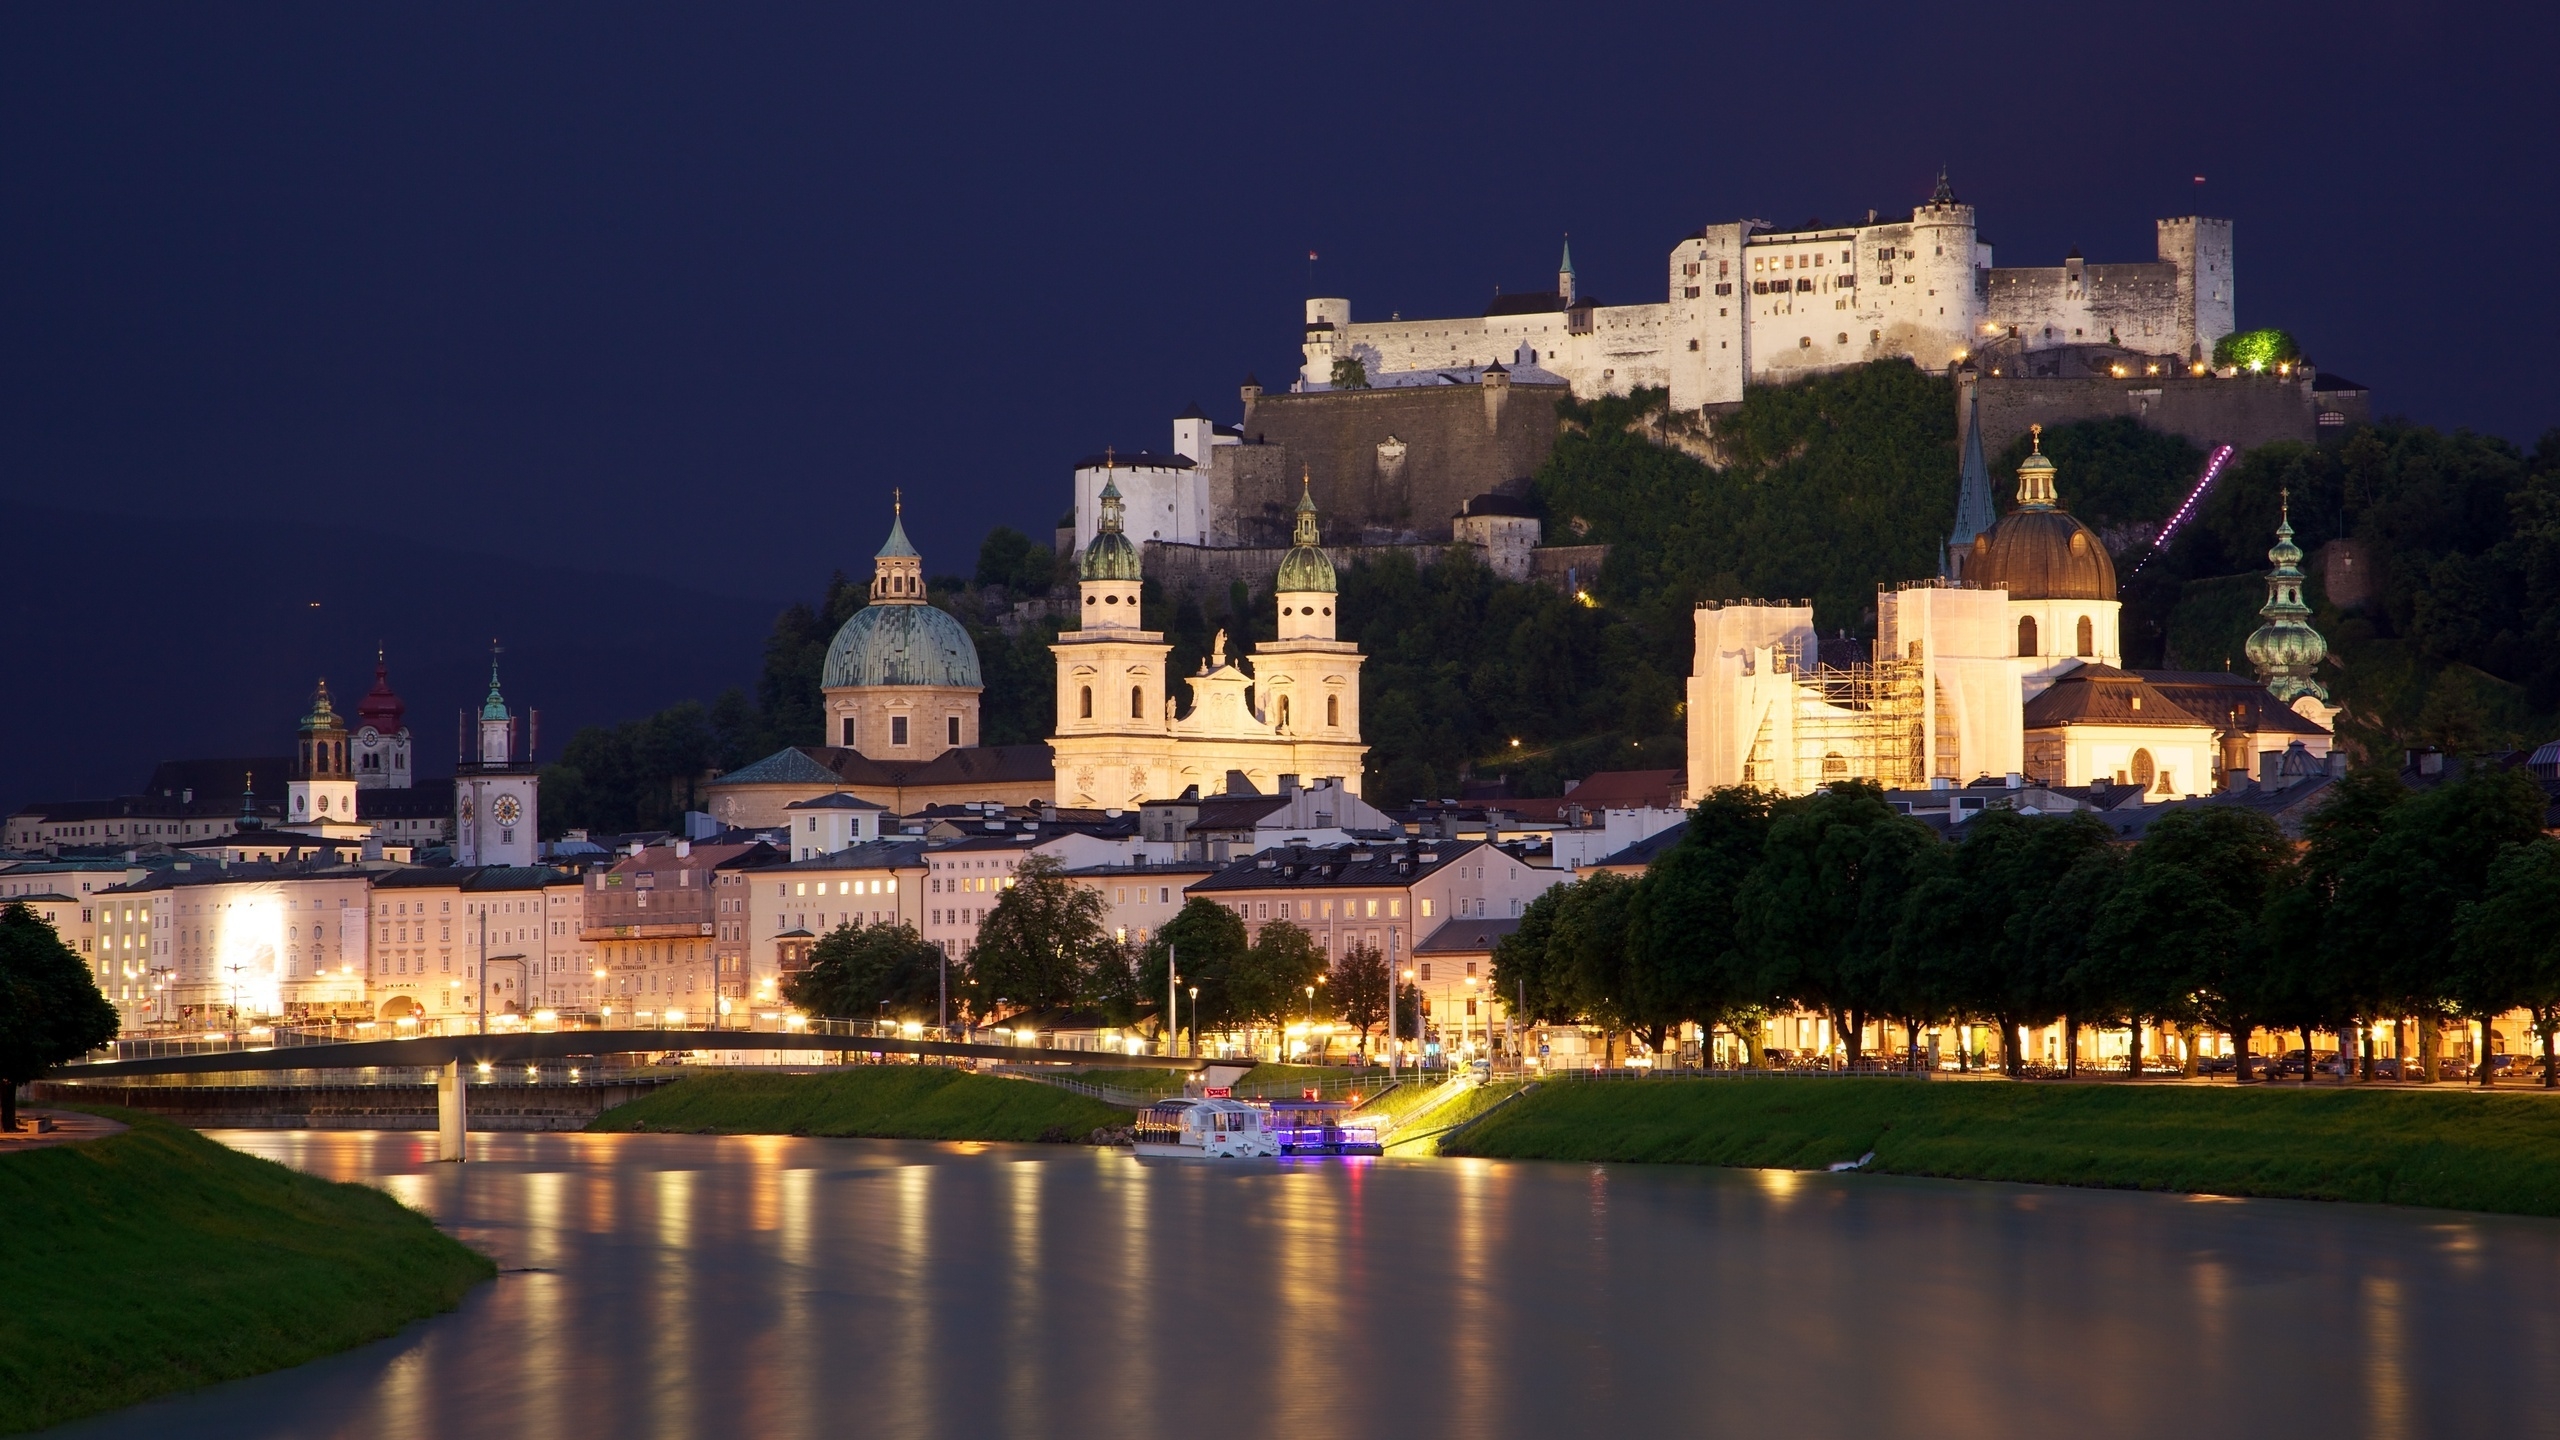 Salzburg Austria for 2560x1440 HDTV resolution